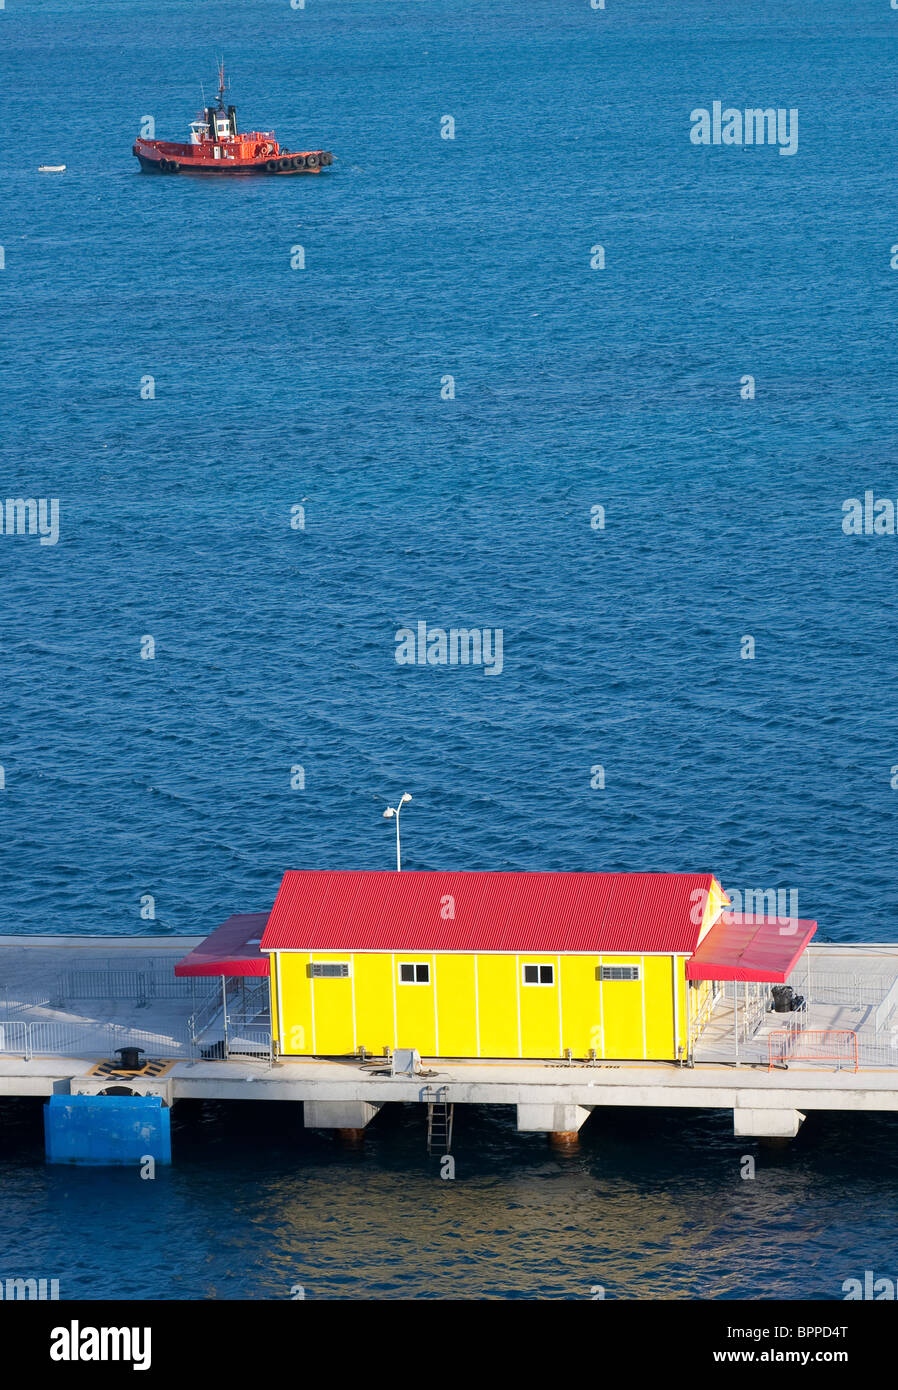 Un bâtiment jaune et rouge sur un quai avec un remorqueur sur l'eau bleu rouge Banque D'Images